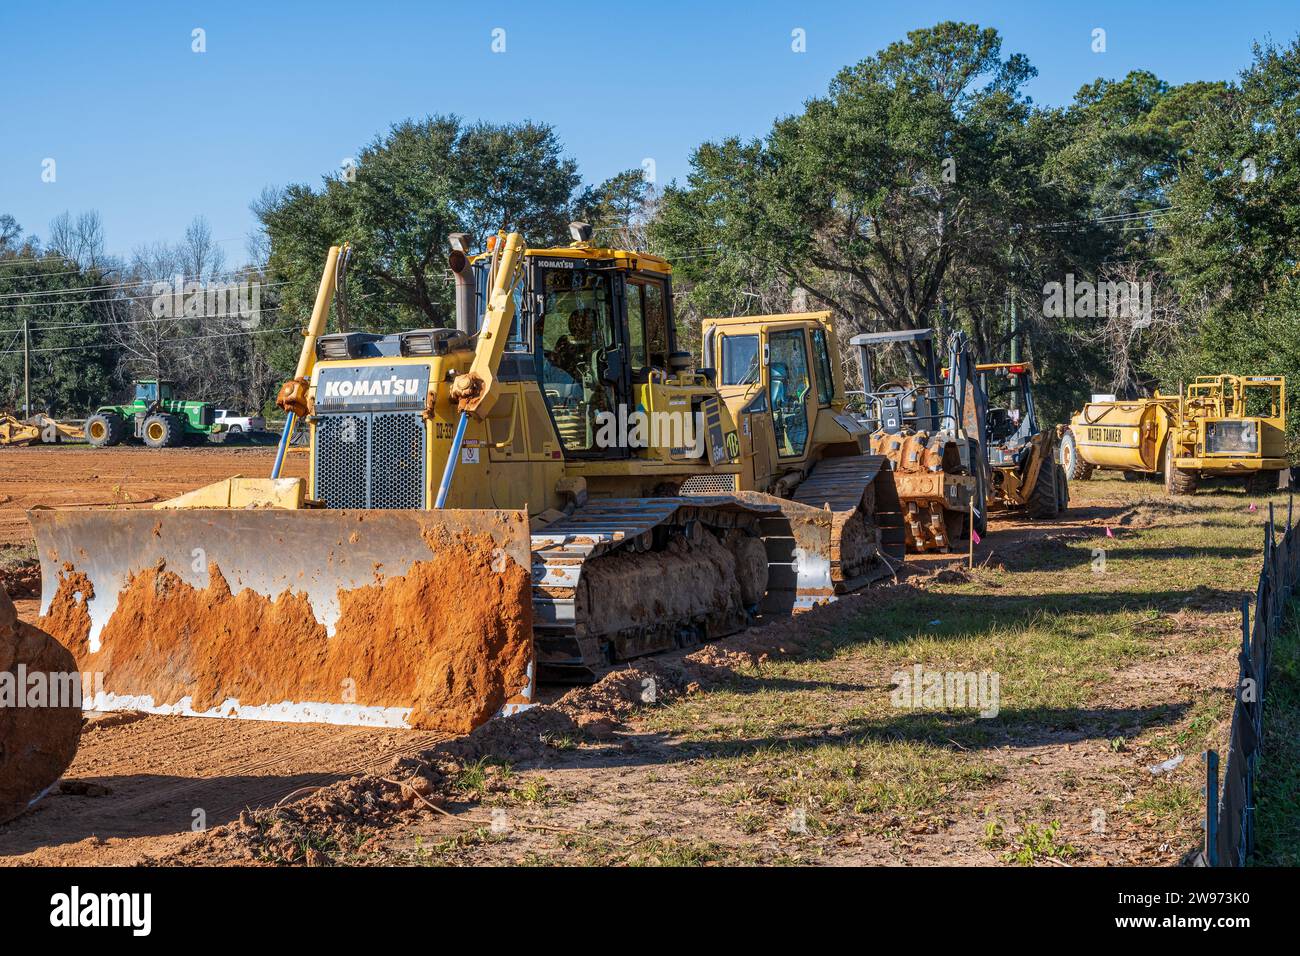 Der Bulldozer Komatsu 65PXi oder Raupenfahrzeug stand auf einer Baustelle in Pike Road, Alabama, USA, mit anderen schweren Baumaschinen in Verbindung. Stockfoto